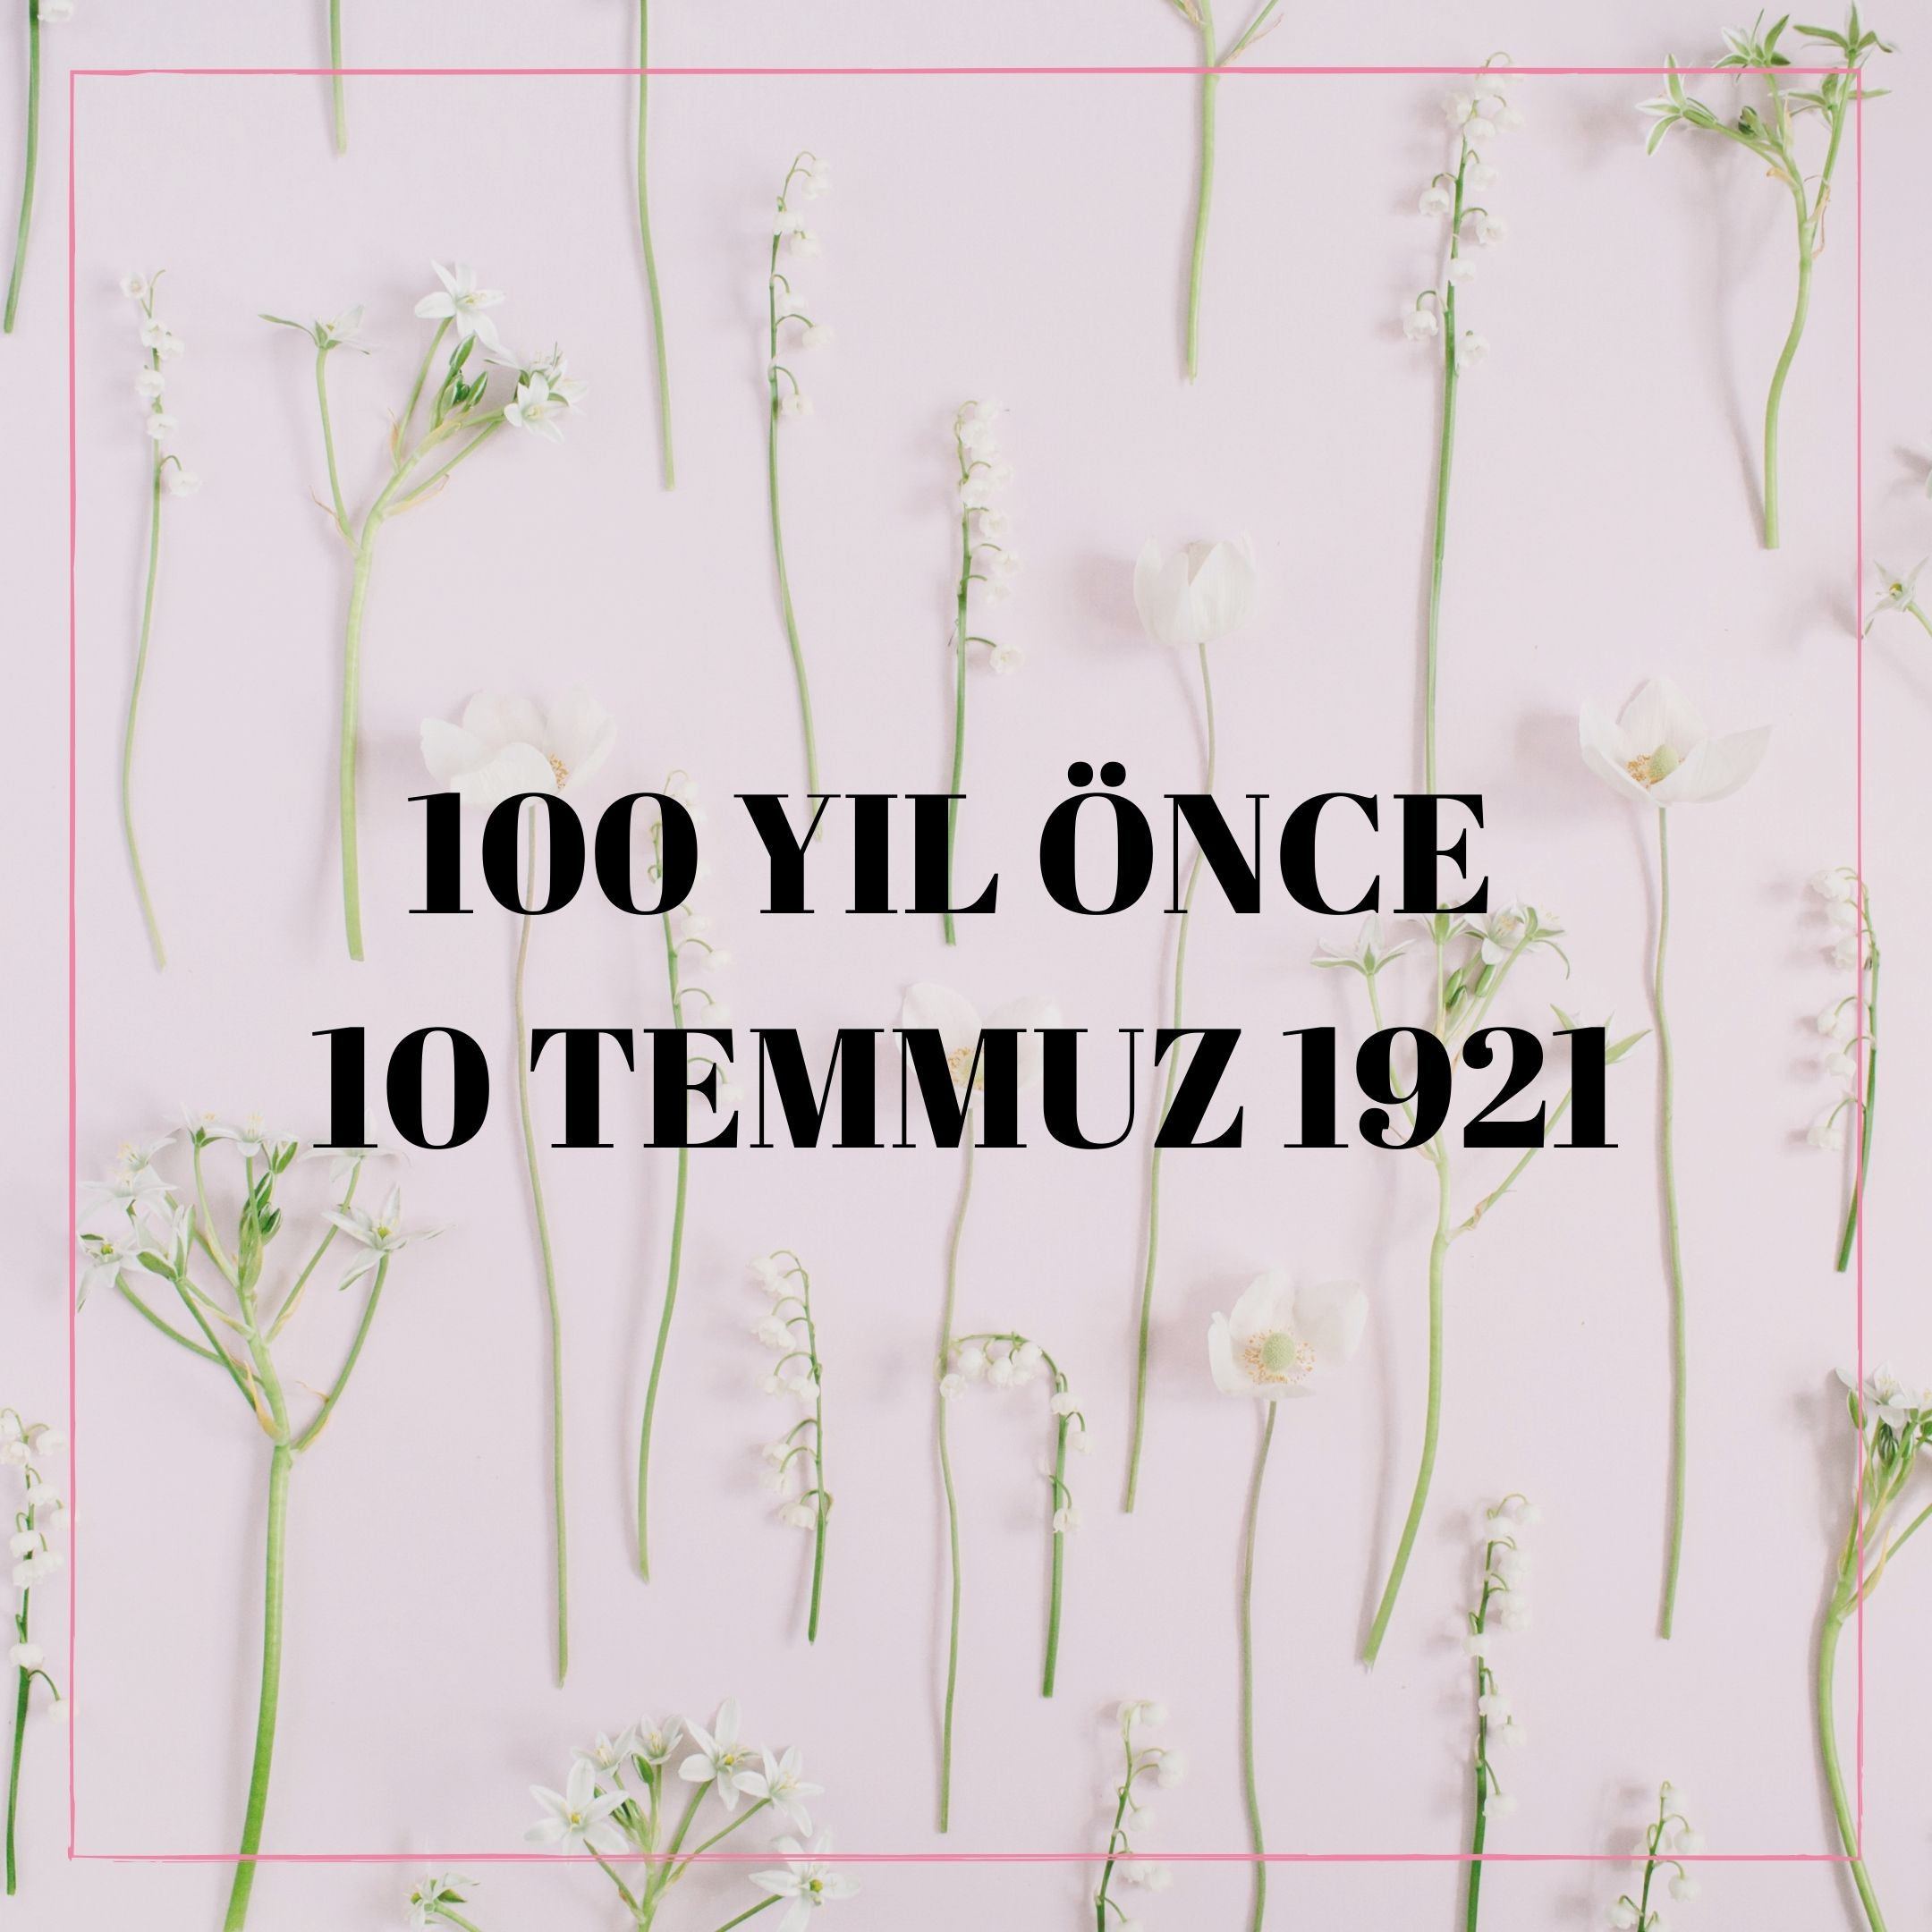 100 YIL ÖNCE 10 TEMMUZ 1921